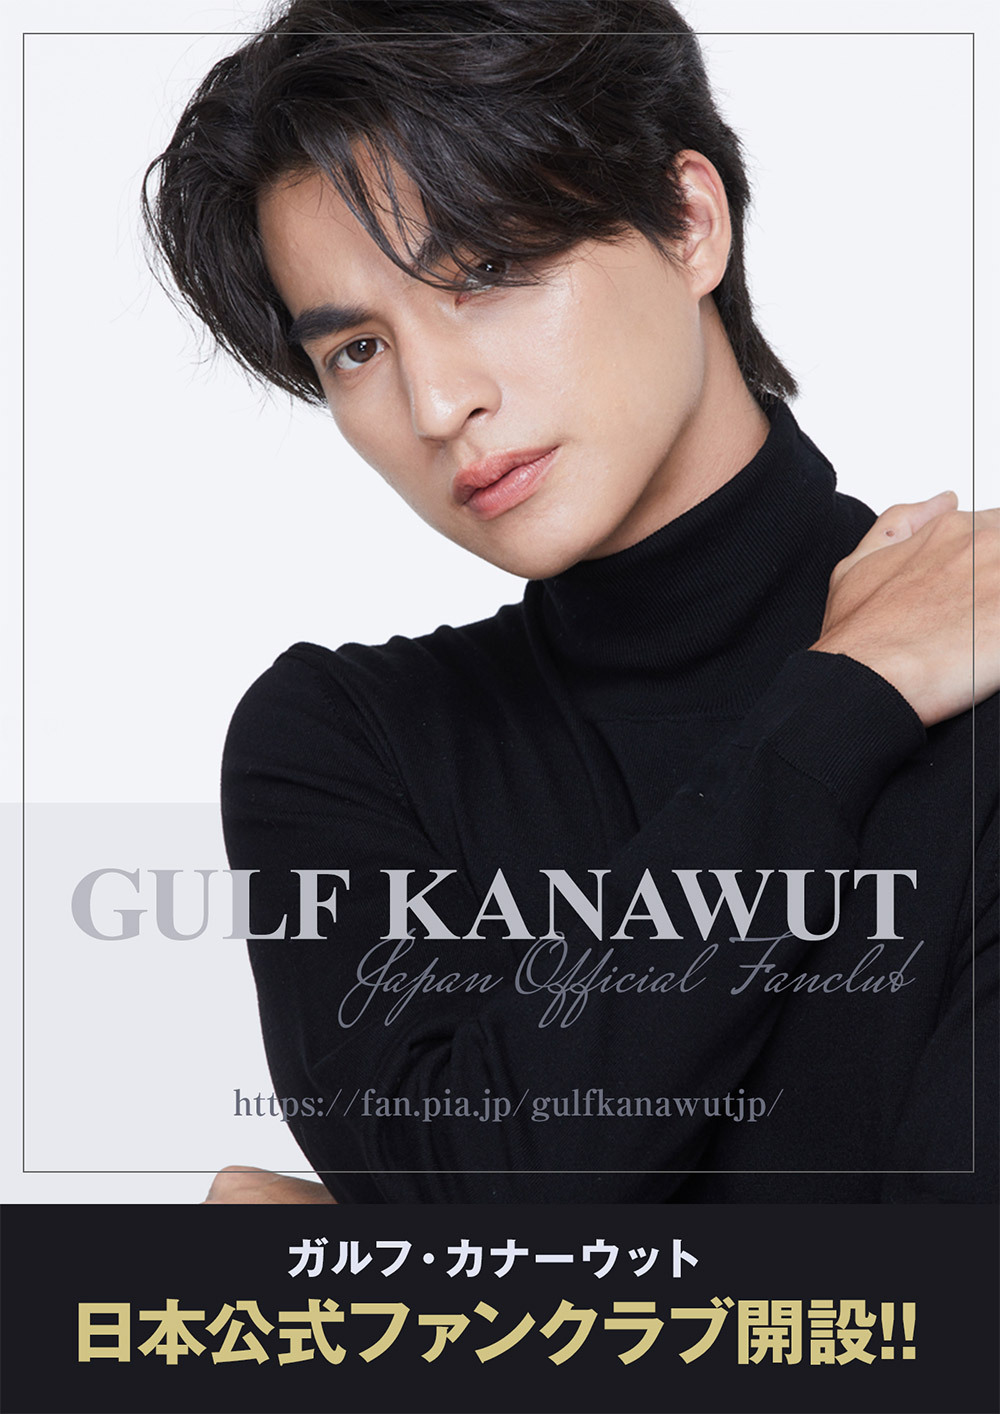 タイ出身の人気俳優「Gulf(ガルフ)」日本オフィシャルファンクラブ 7月